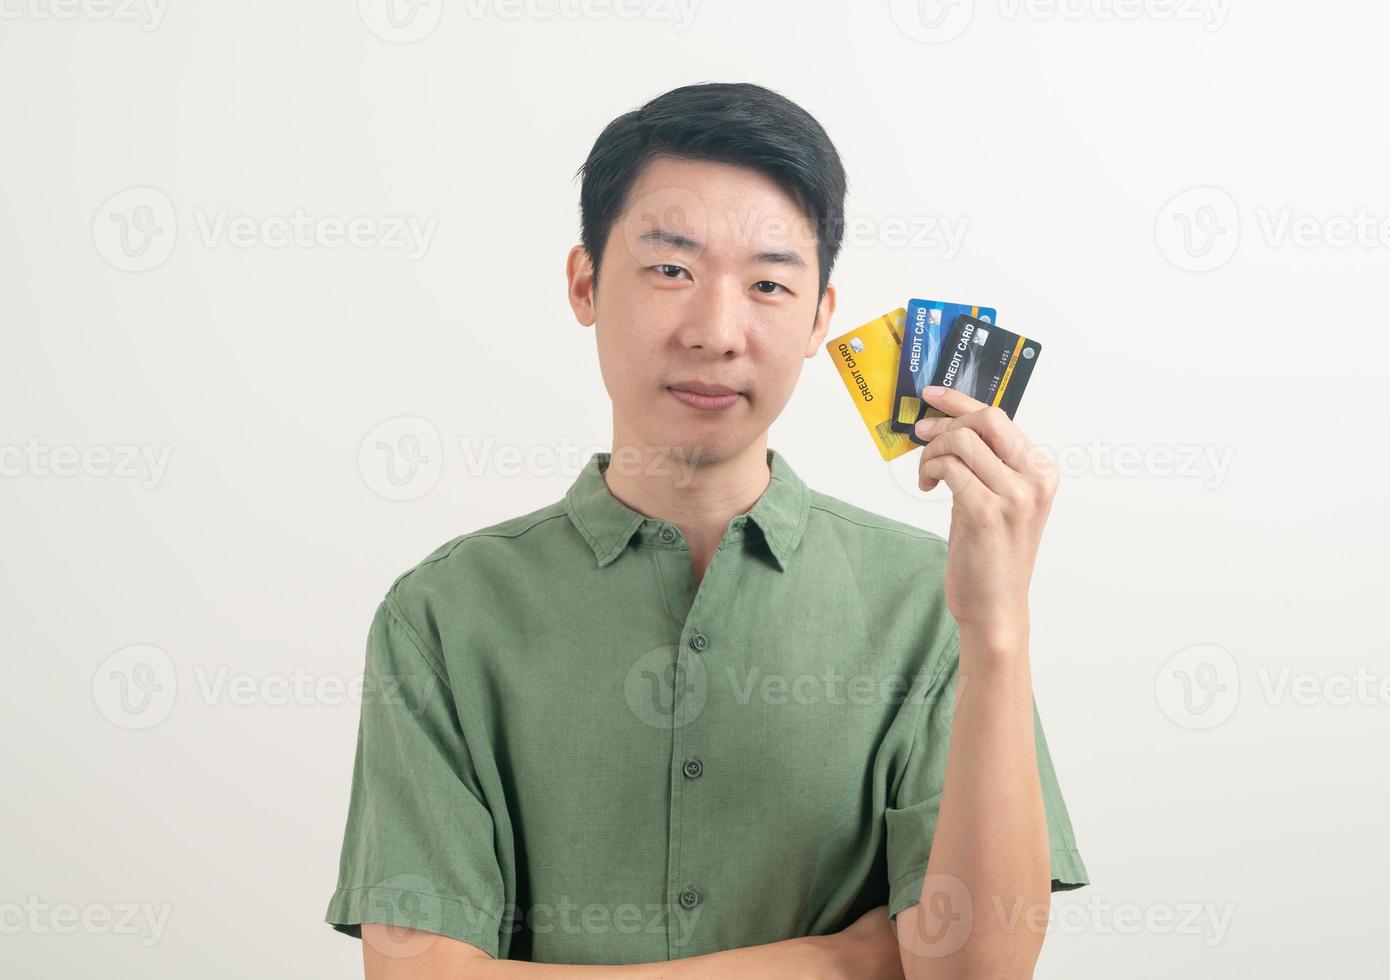 jovem asiático segurando um cartão de crédito foto